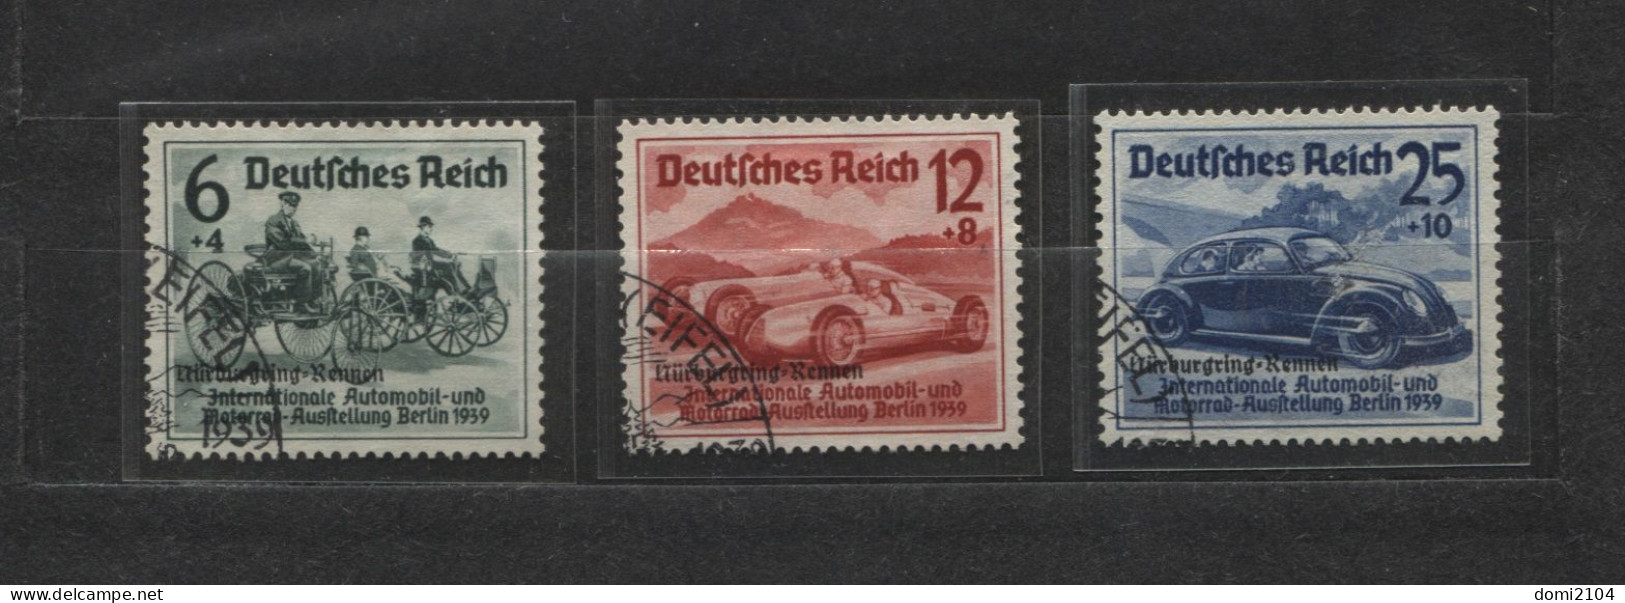 Deutsches Reich # 695-7 Nürburgring-Rennen Überdruckserie Sonderstempel - Unused Stamps